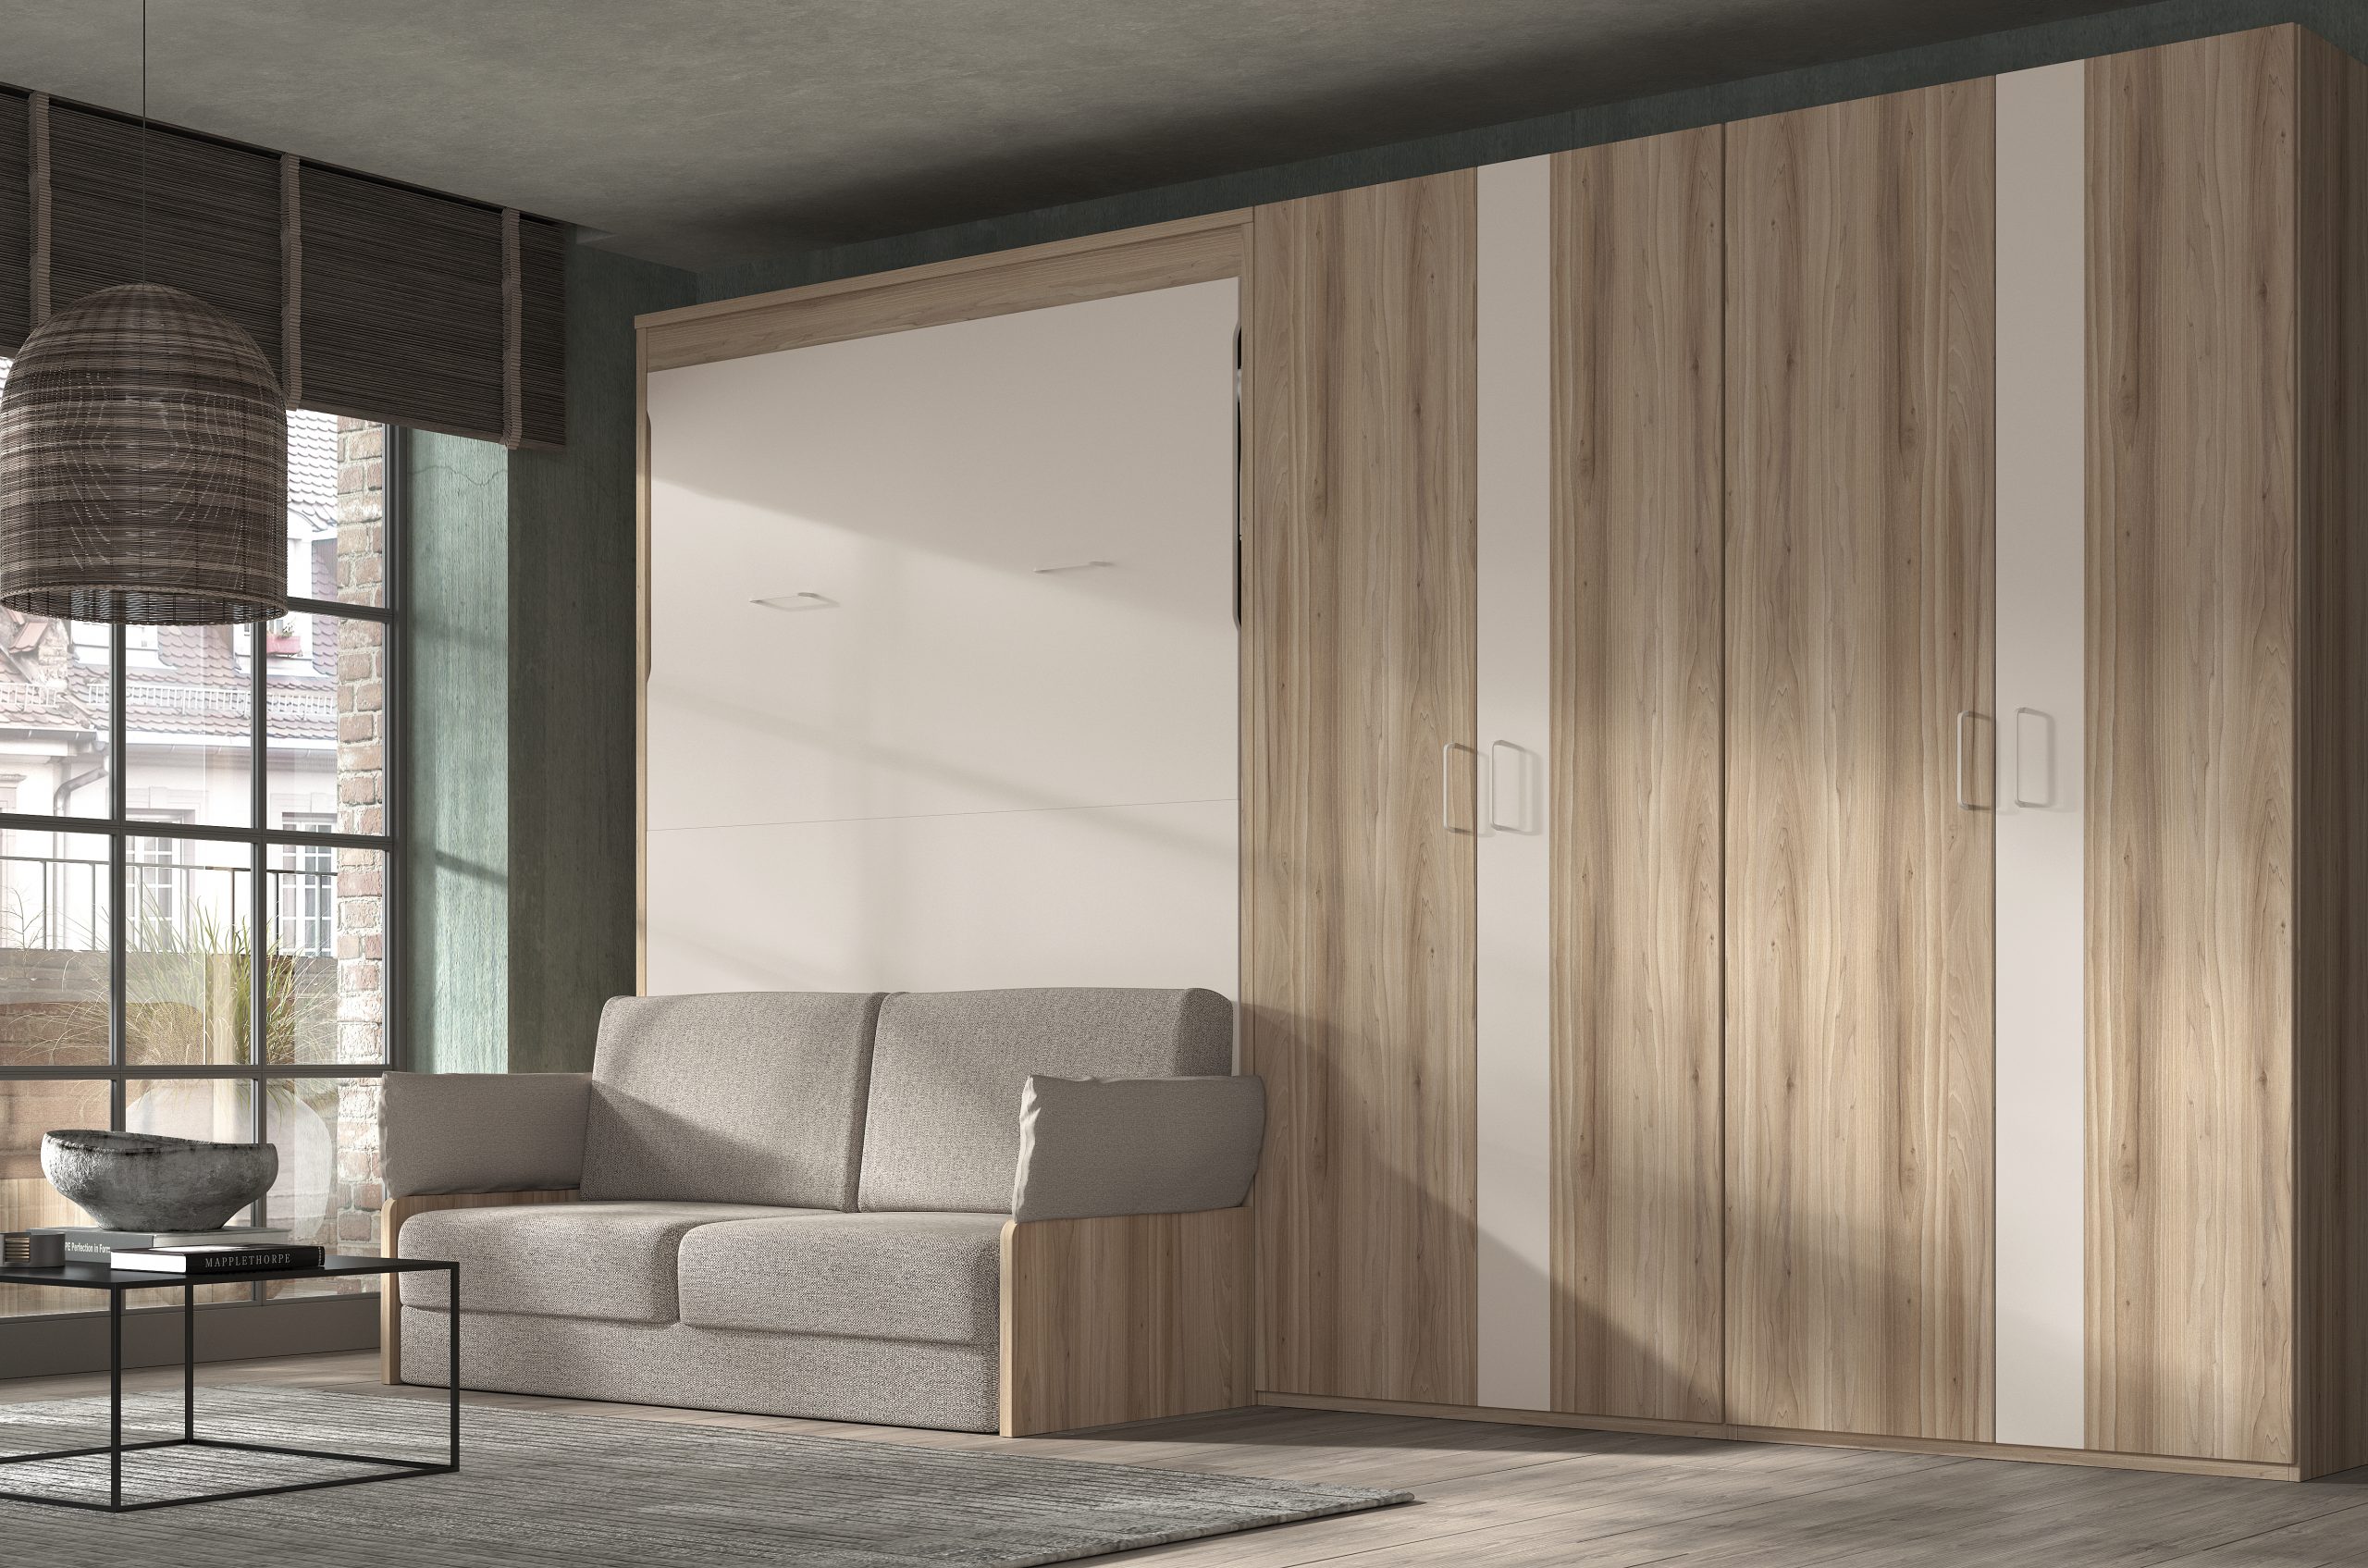 Cama abatible horizontal plegable de 90, 105 con sofá y armario incorporado  Glicerio Chaves Formas 19